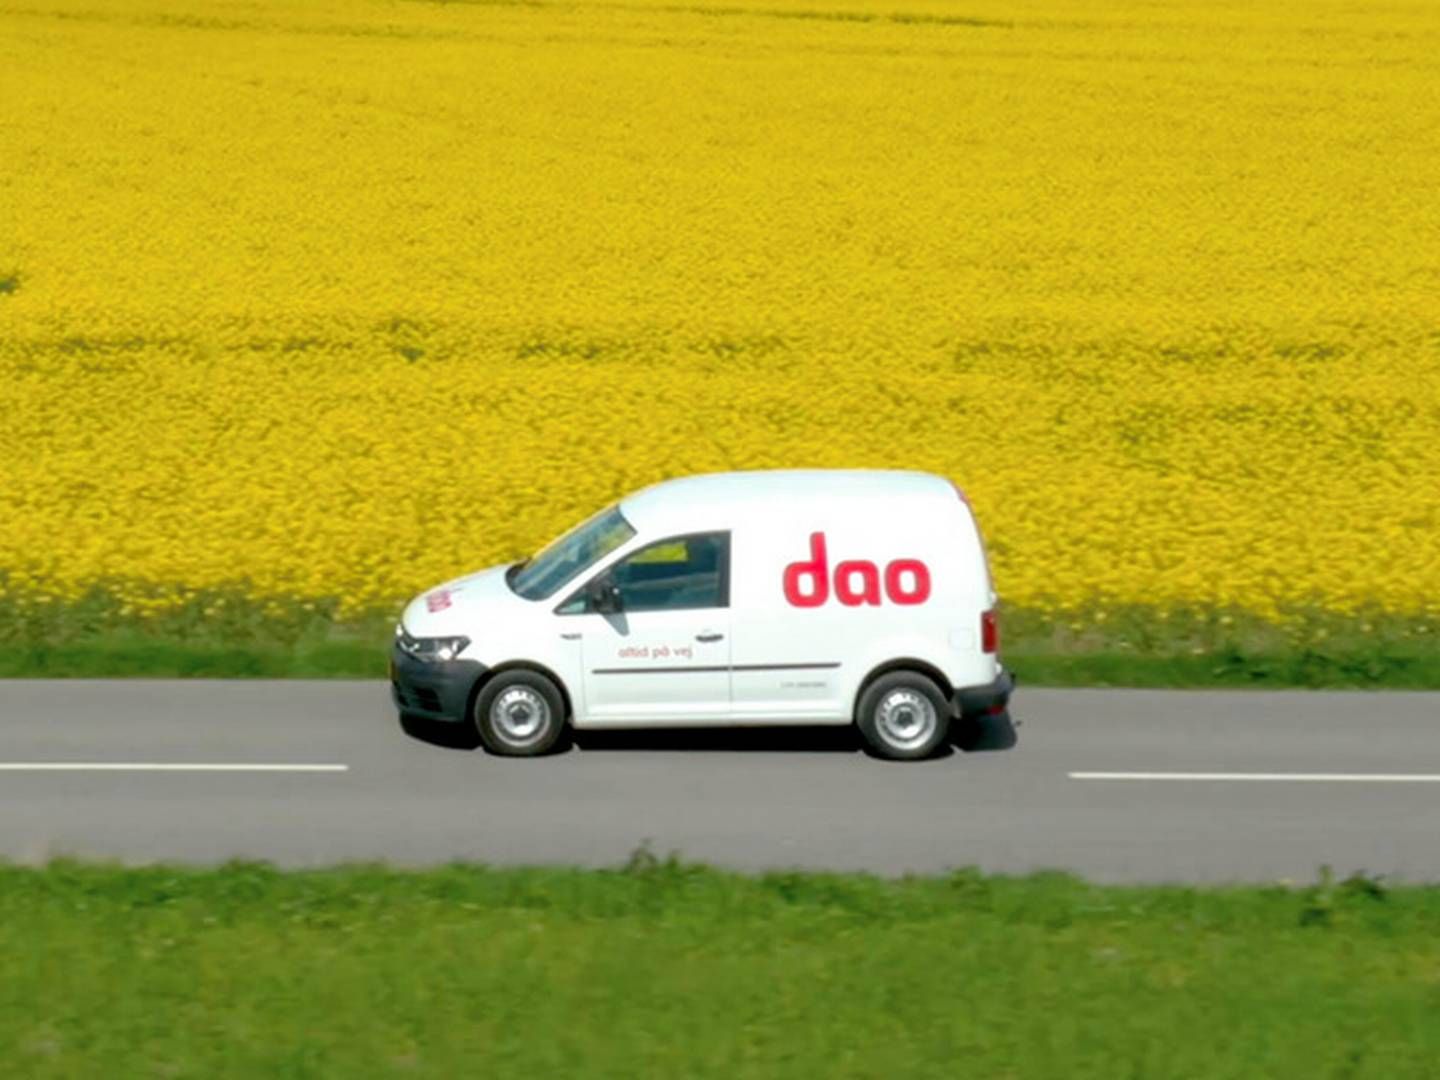 Distribututionsselskabet Dao venter fremgang på toplinjen i 2023. | Foto: Pr / Dao